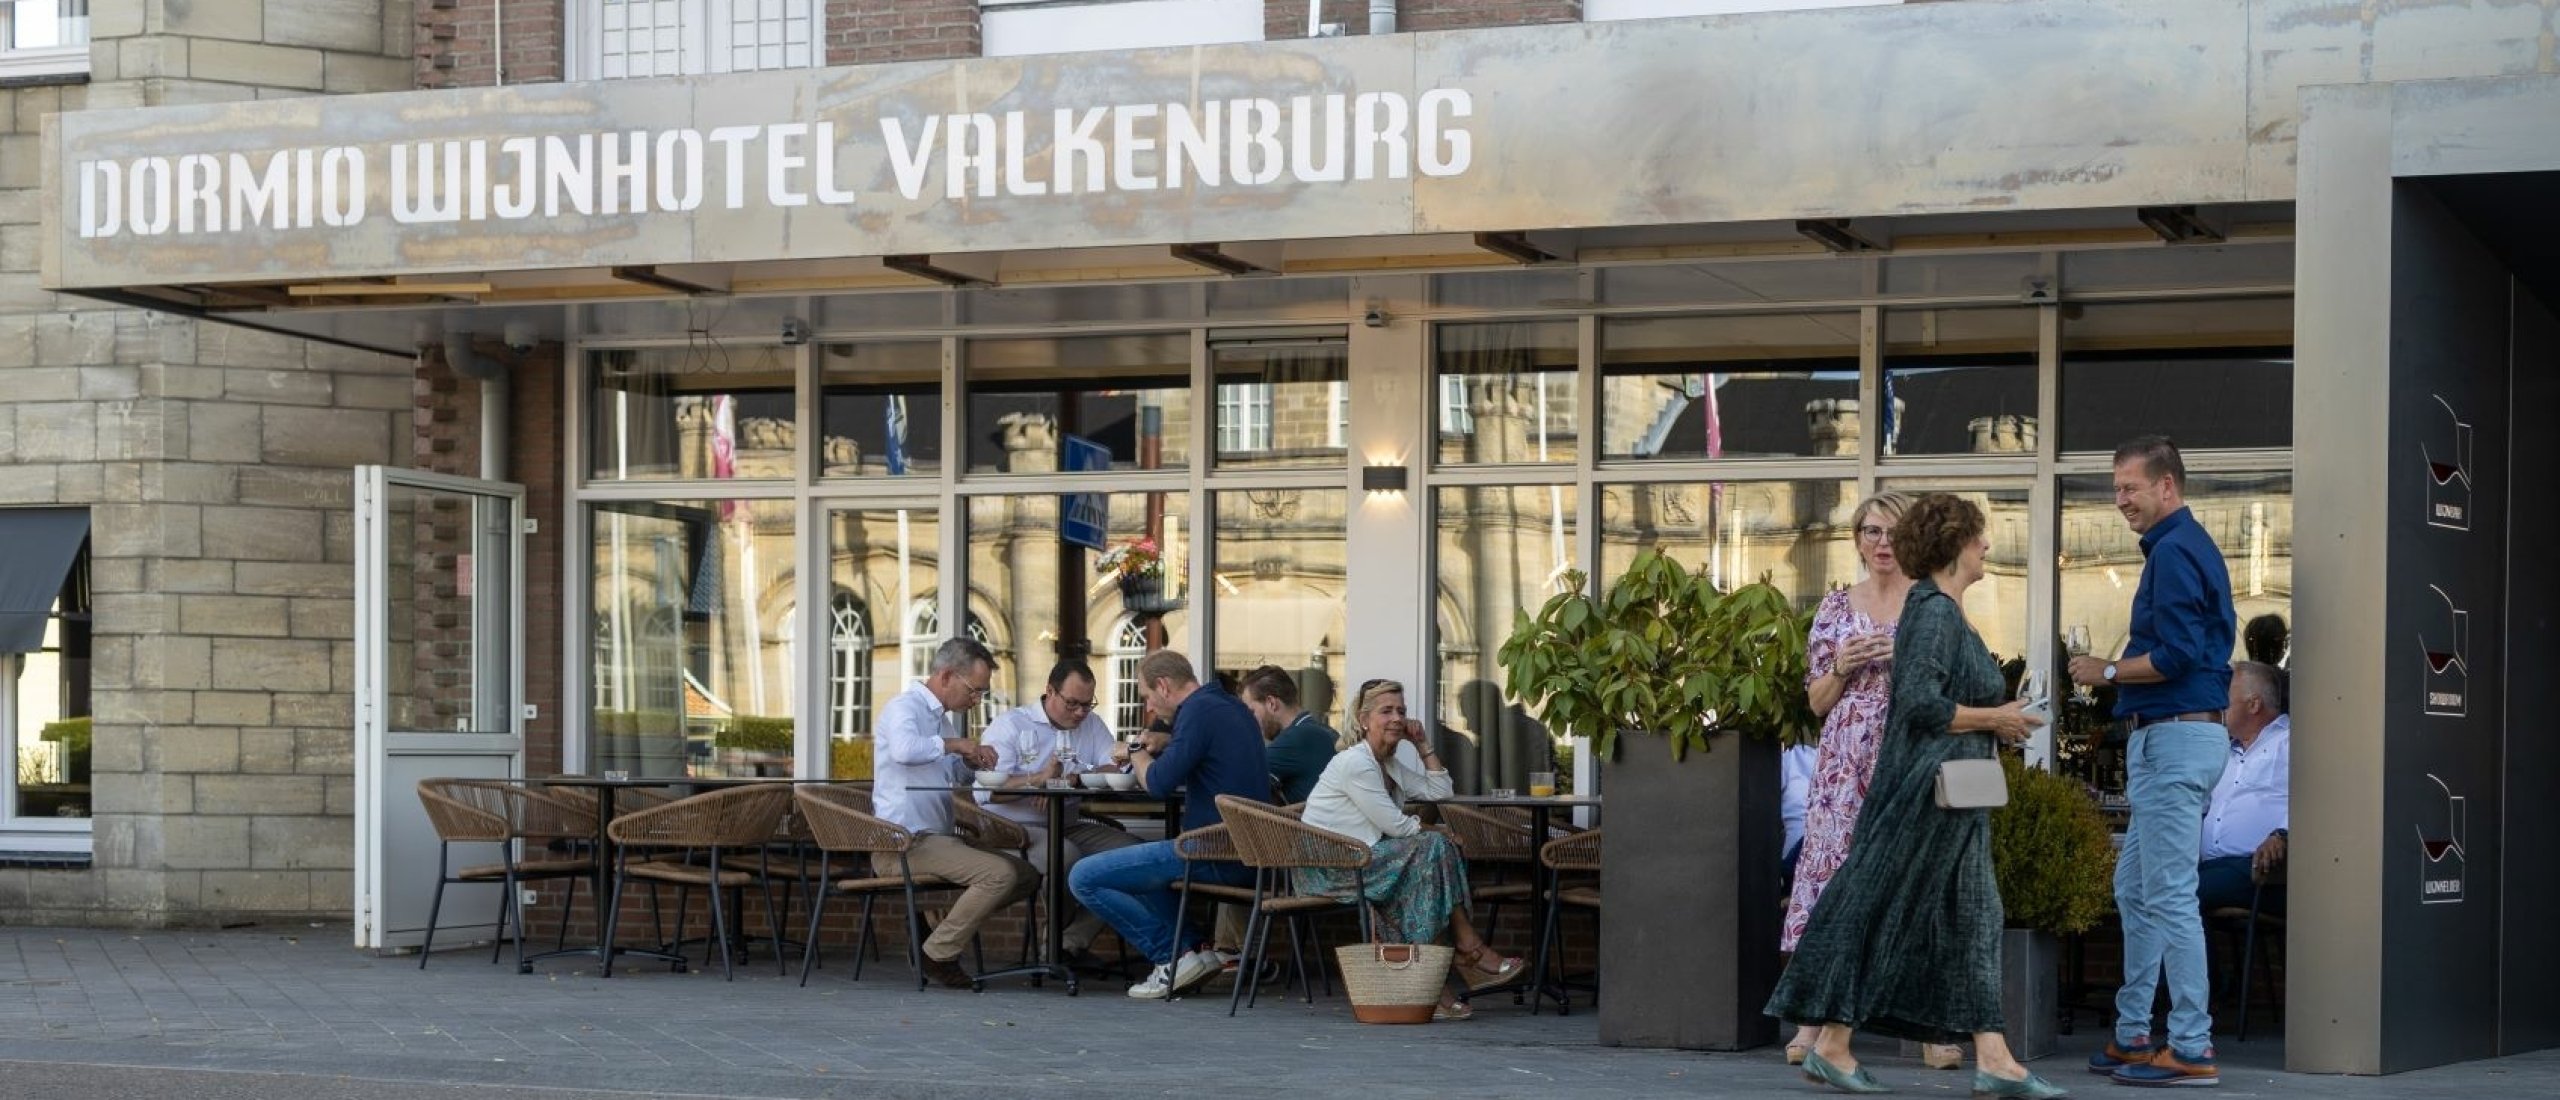 Dormio Wijnhotel Valkenburg geopend!